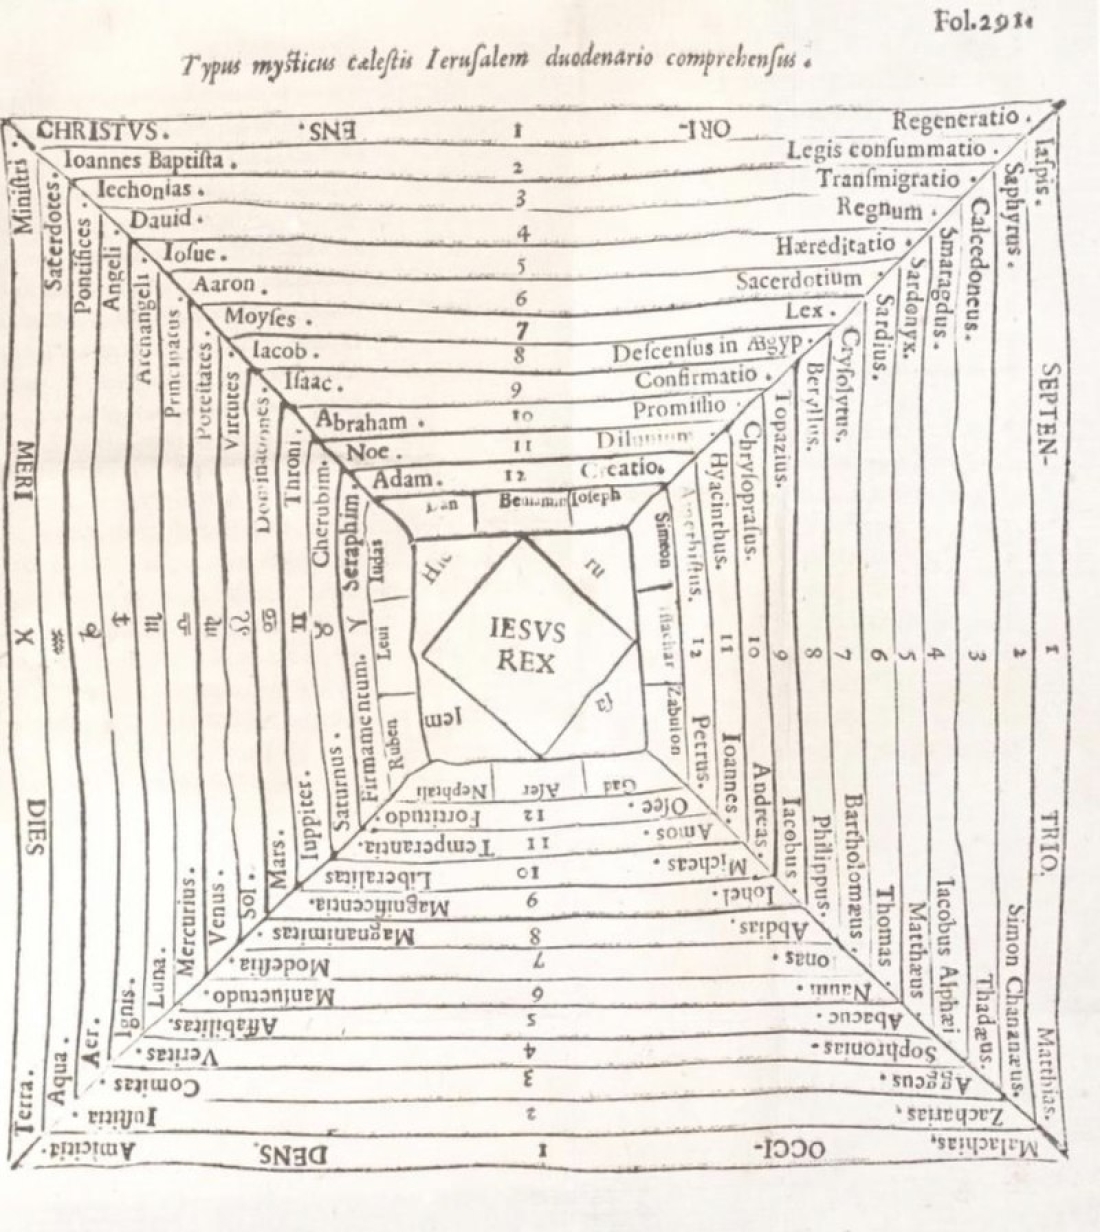 Αριθμολογία. Εικονογράφηση της Αριθμολογίας του γερμανού ιησουίτη λογίου Athanasius Kircher (1602-1680), Κίρχερ που τον συγκρίνουν με τον Λεονάρντο ντα Βίντσι για το τεράστιο εύρος των ενδιαφερόντων του. Αν και το έργο του Kircher δεν βασιζόταν σε μαθηματική βάση, ανέπτυξε διάφορα συστήματα για τη δημιουργία και την καταμέτρηση όλων των συνδυασμών μιας πεπερασμένης συλλογής αντικειμένων (δηλαδή ενός πεπερασμένου συνόλου).  